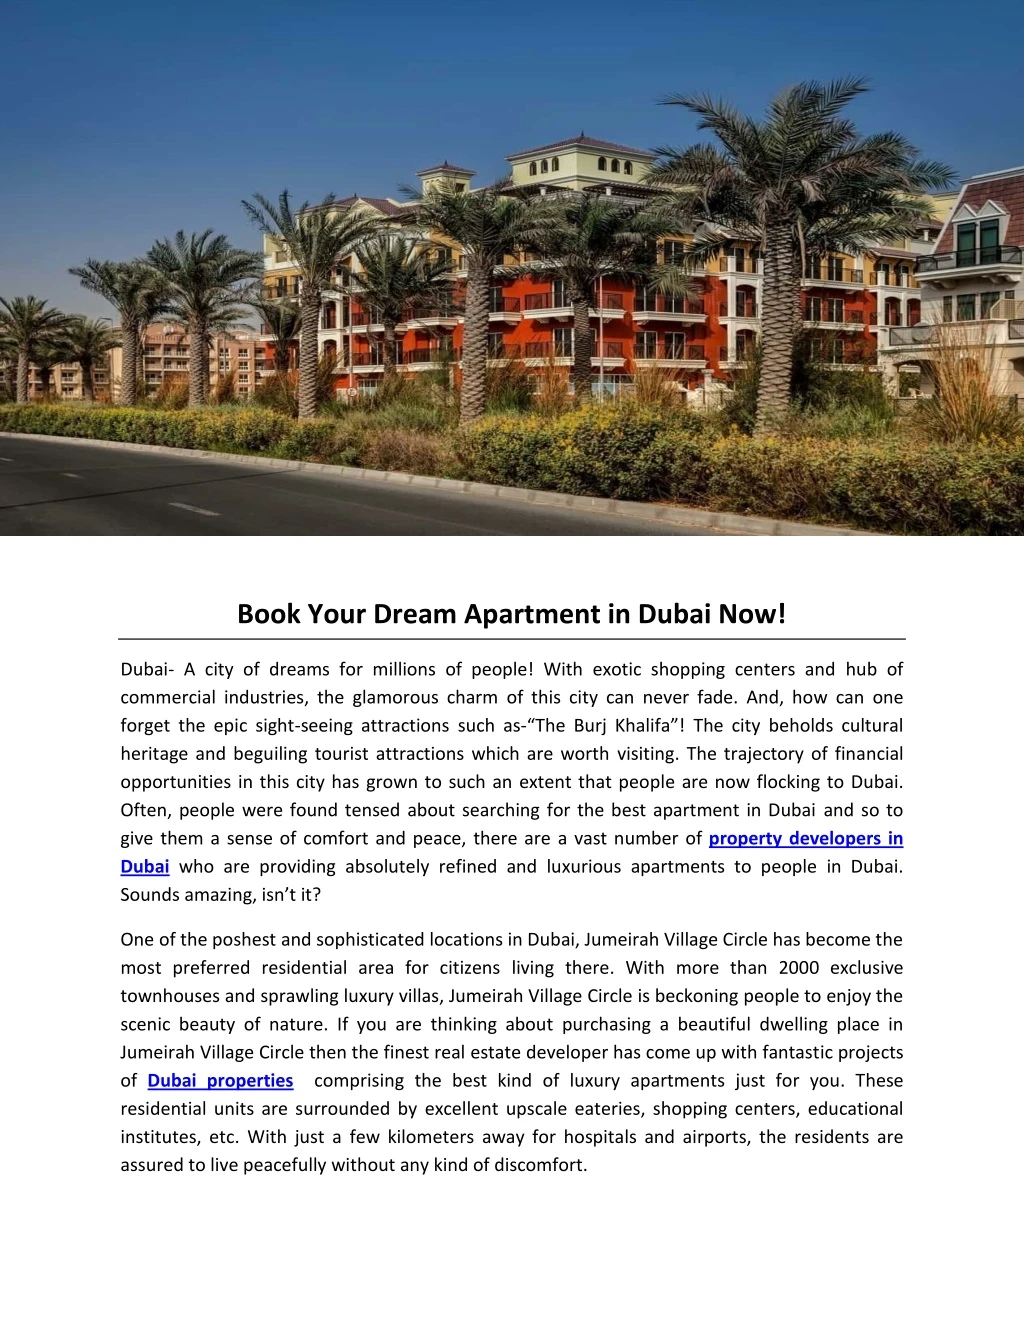 book your dream apartment in dubai now